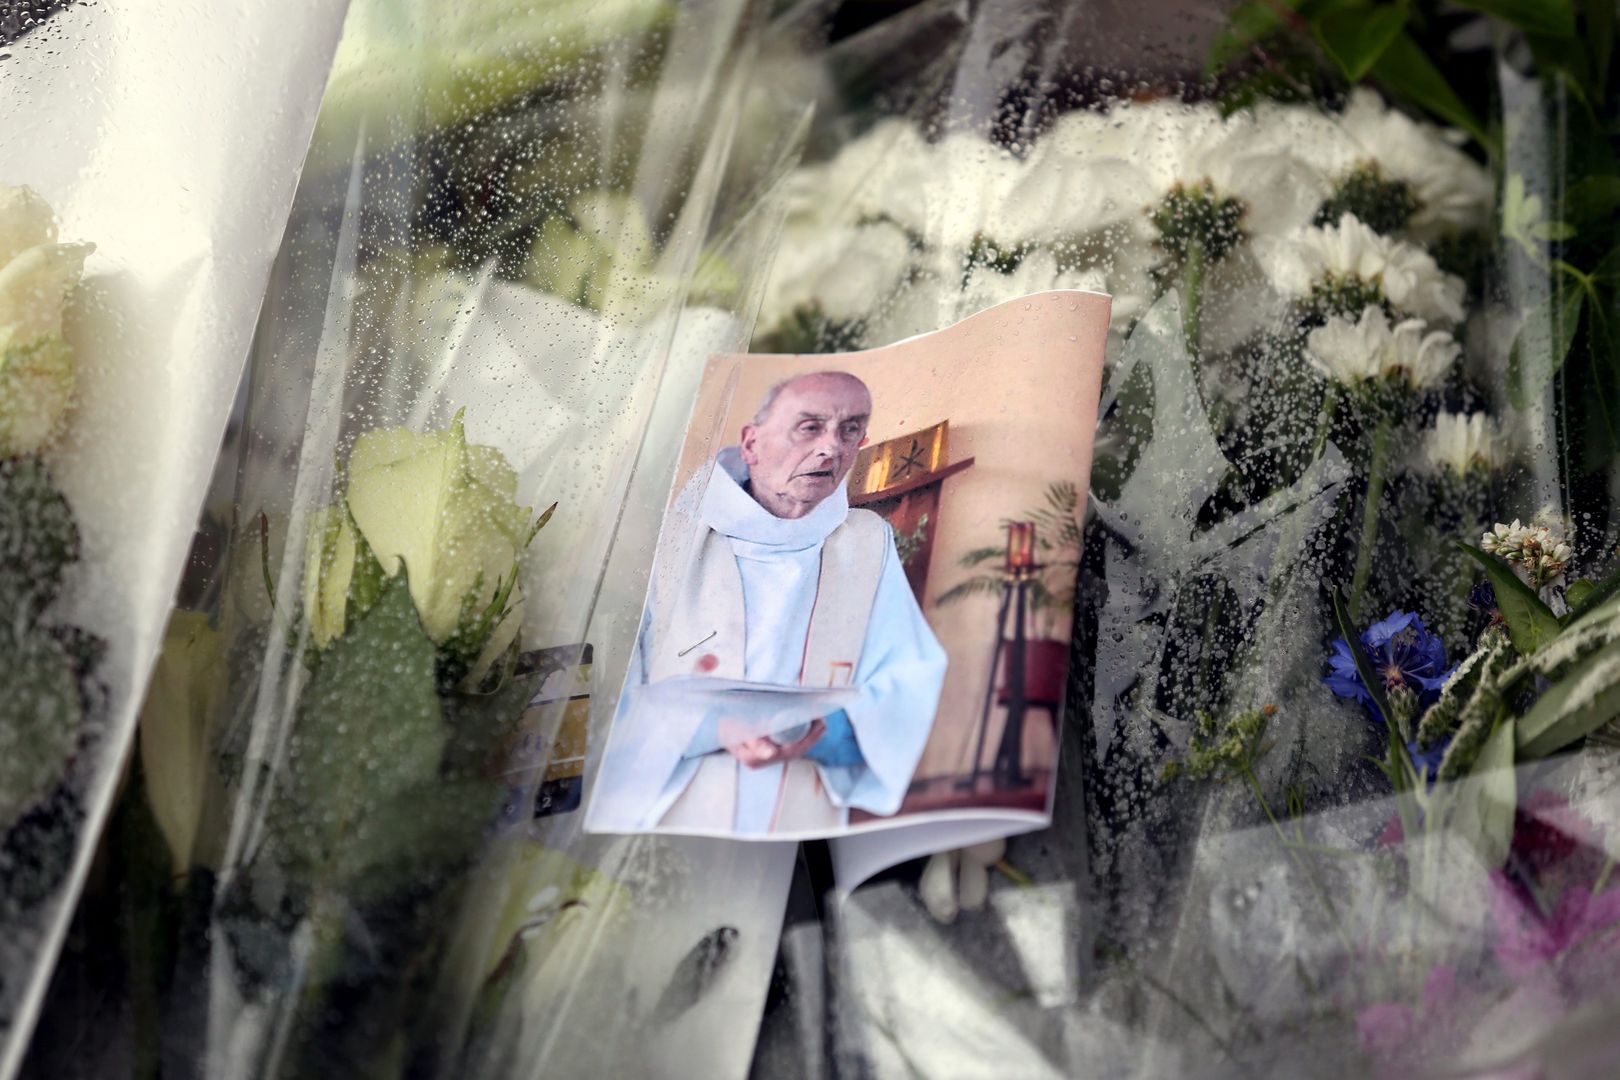 Muzułmanie nie chcą pogrzebać mordercy francuskiego księdza